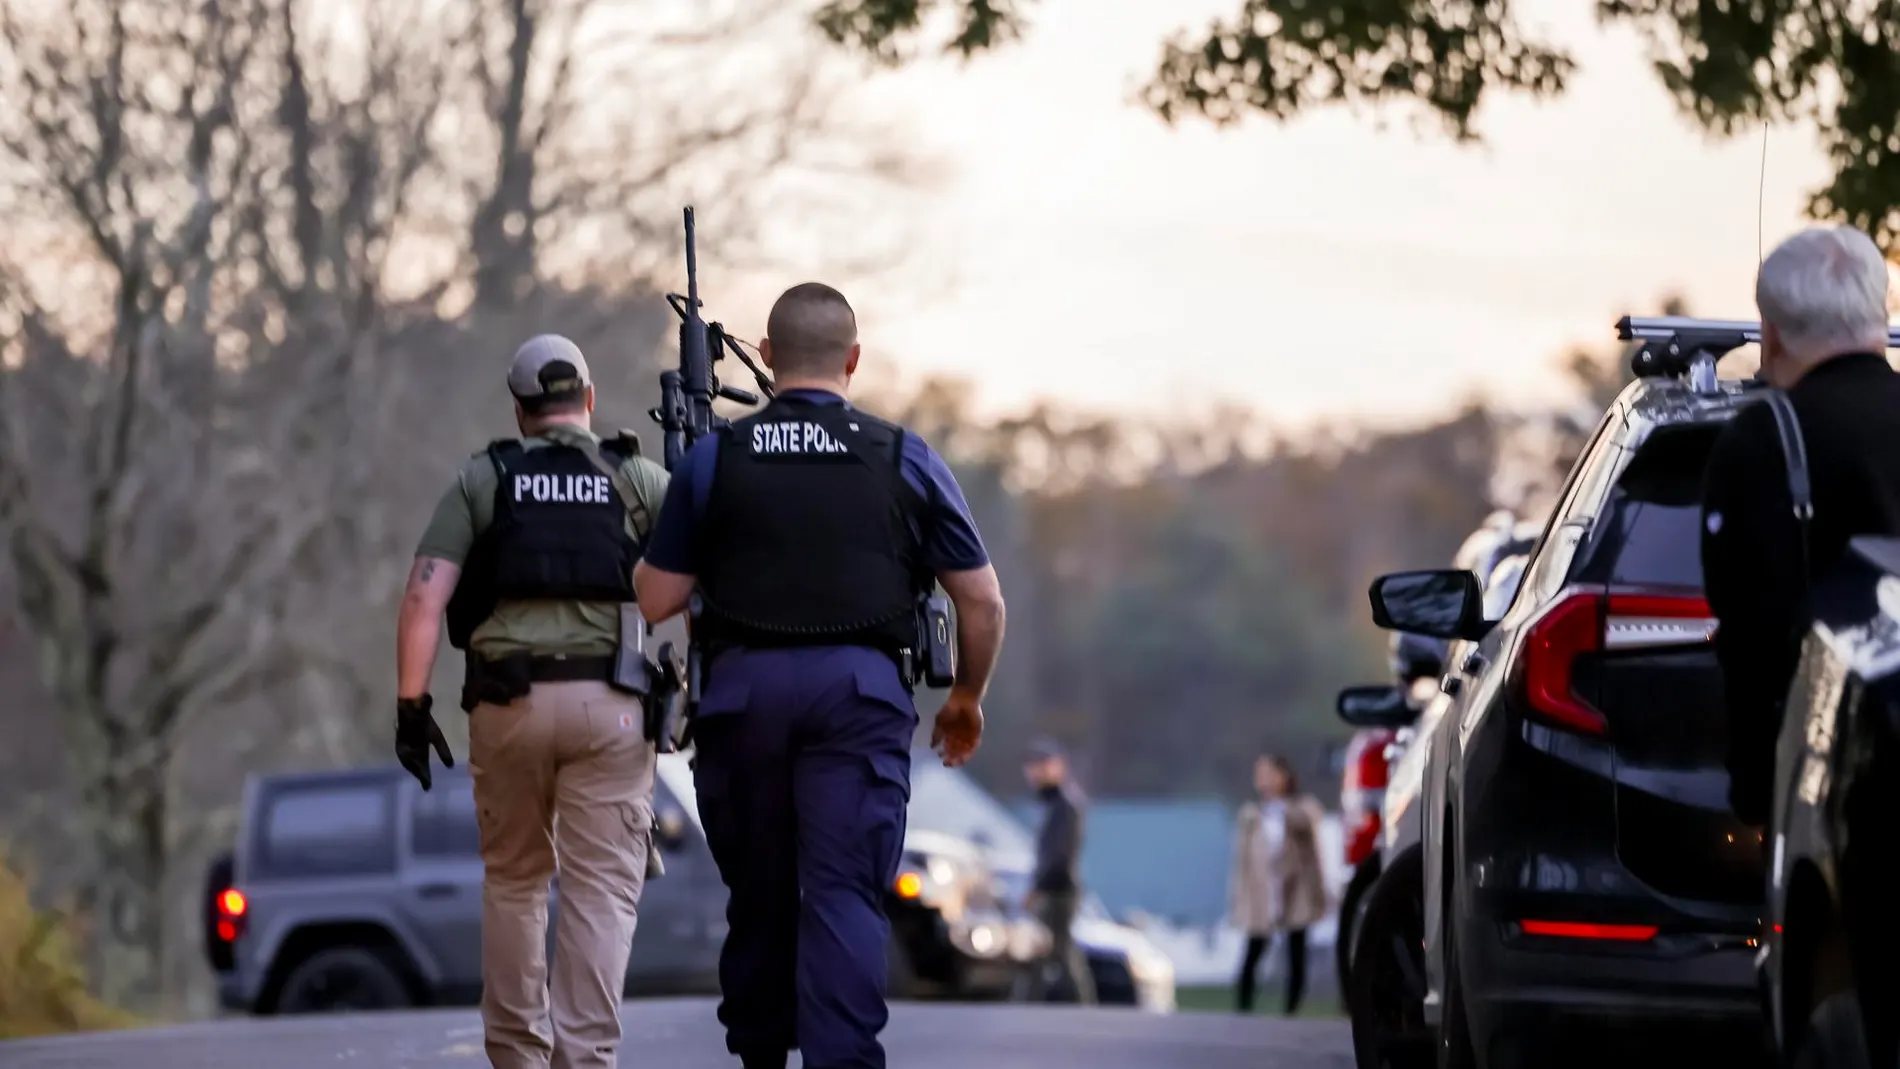 Caza al hombre en EEUU: buscan al tirador que ha matado a al menos 18 personas en Lewiston, EEUU